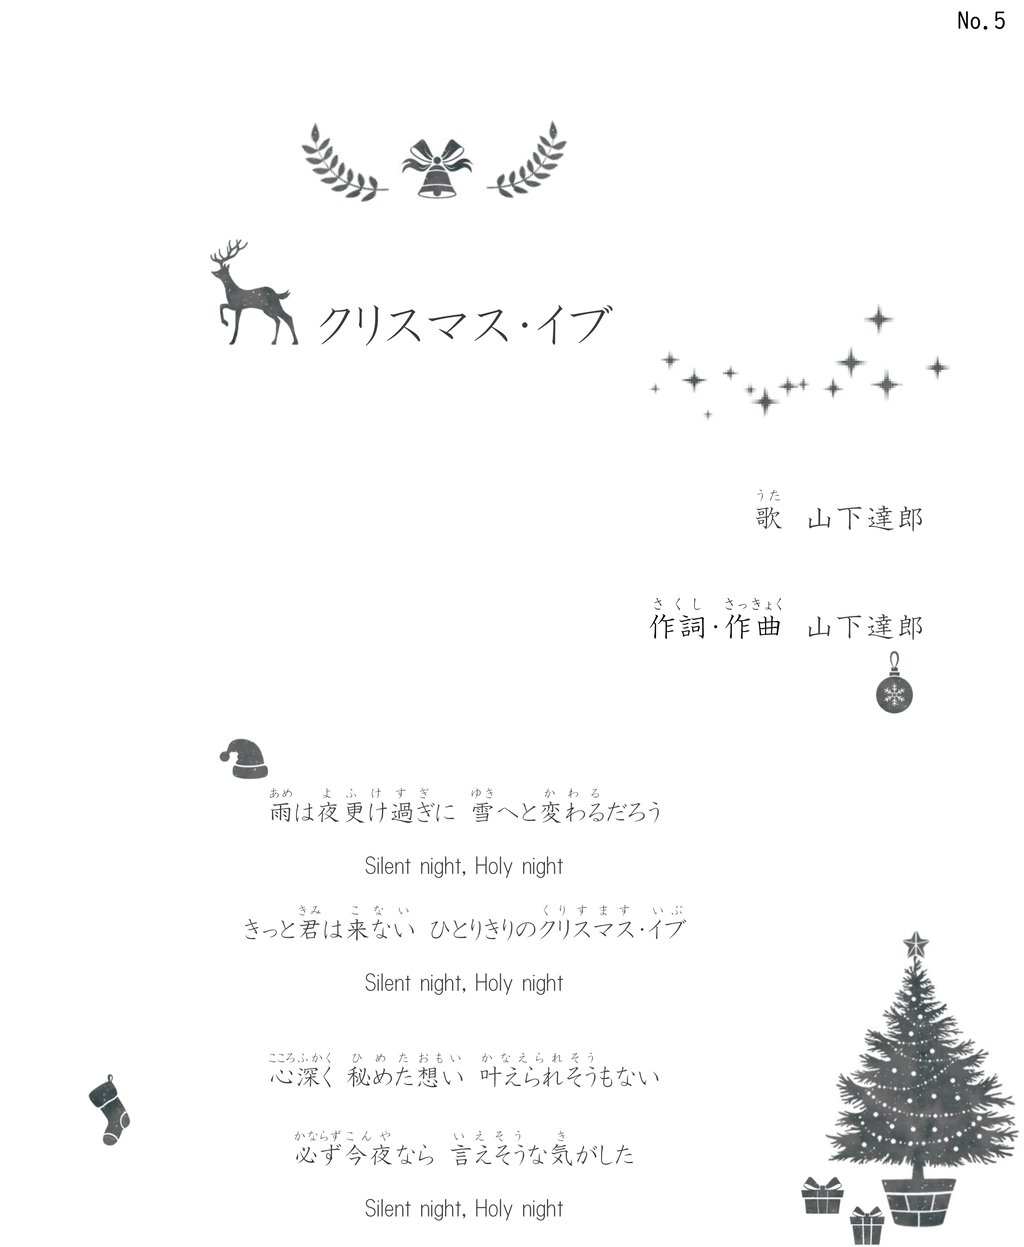 おすすめの歌 クリスマスイブ By 山下達郎 Tamagon Nhat Ban